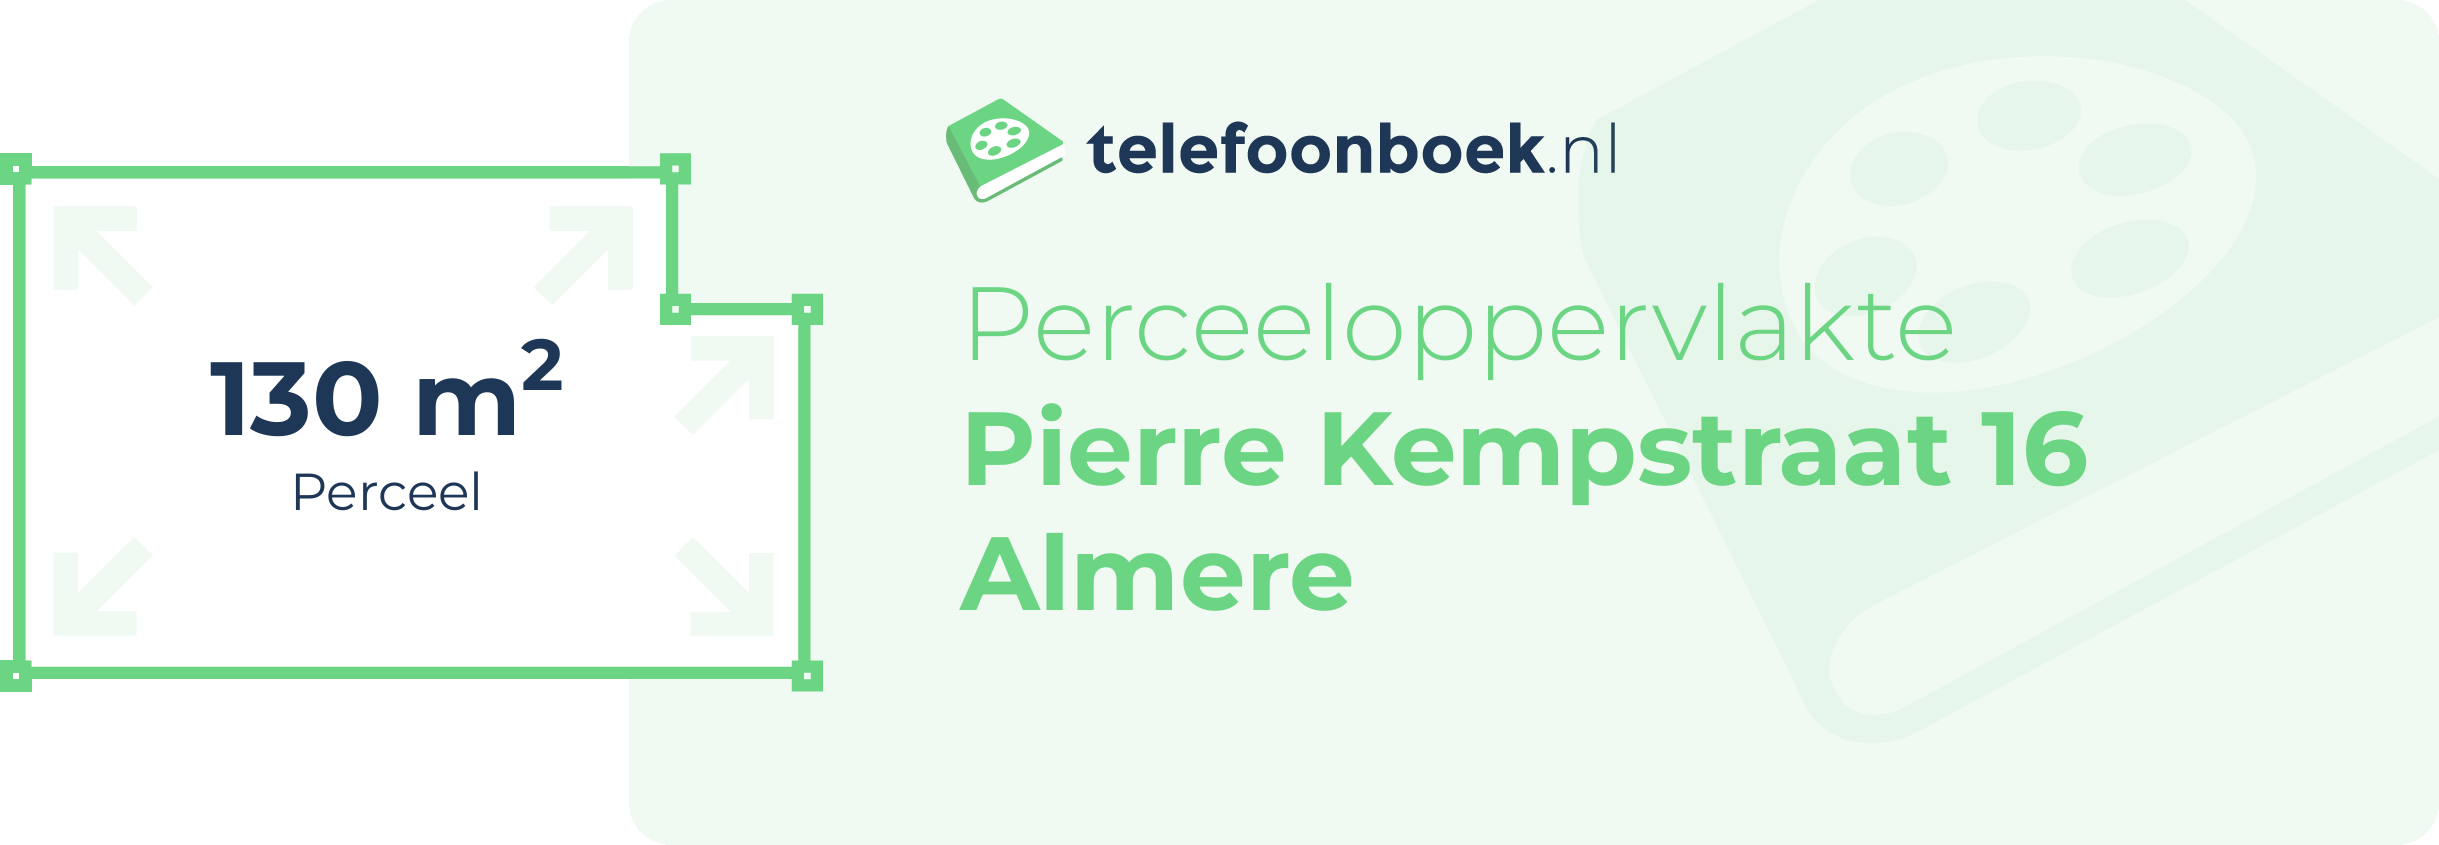 Perceeloppervlakte Pierre Kempstraat 16 Almere